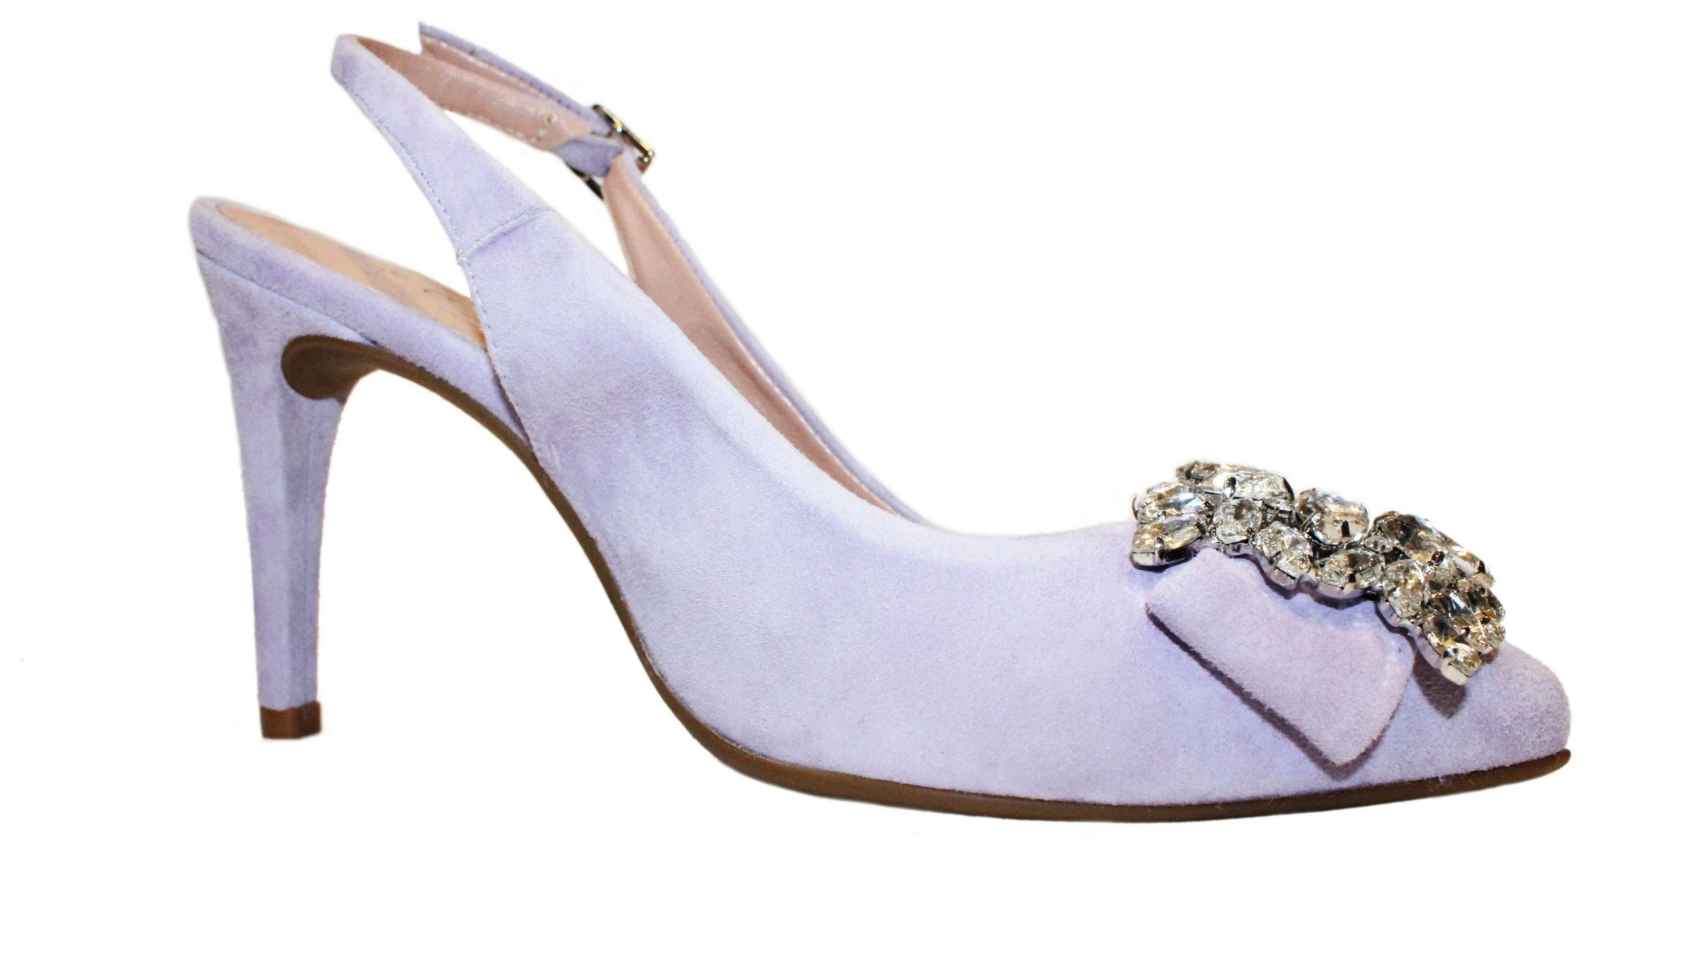 Los 'stilettos' comenzaron a ponerse de moda en la década de los años 50